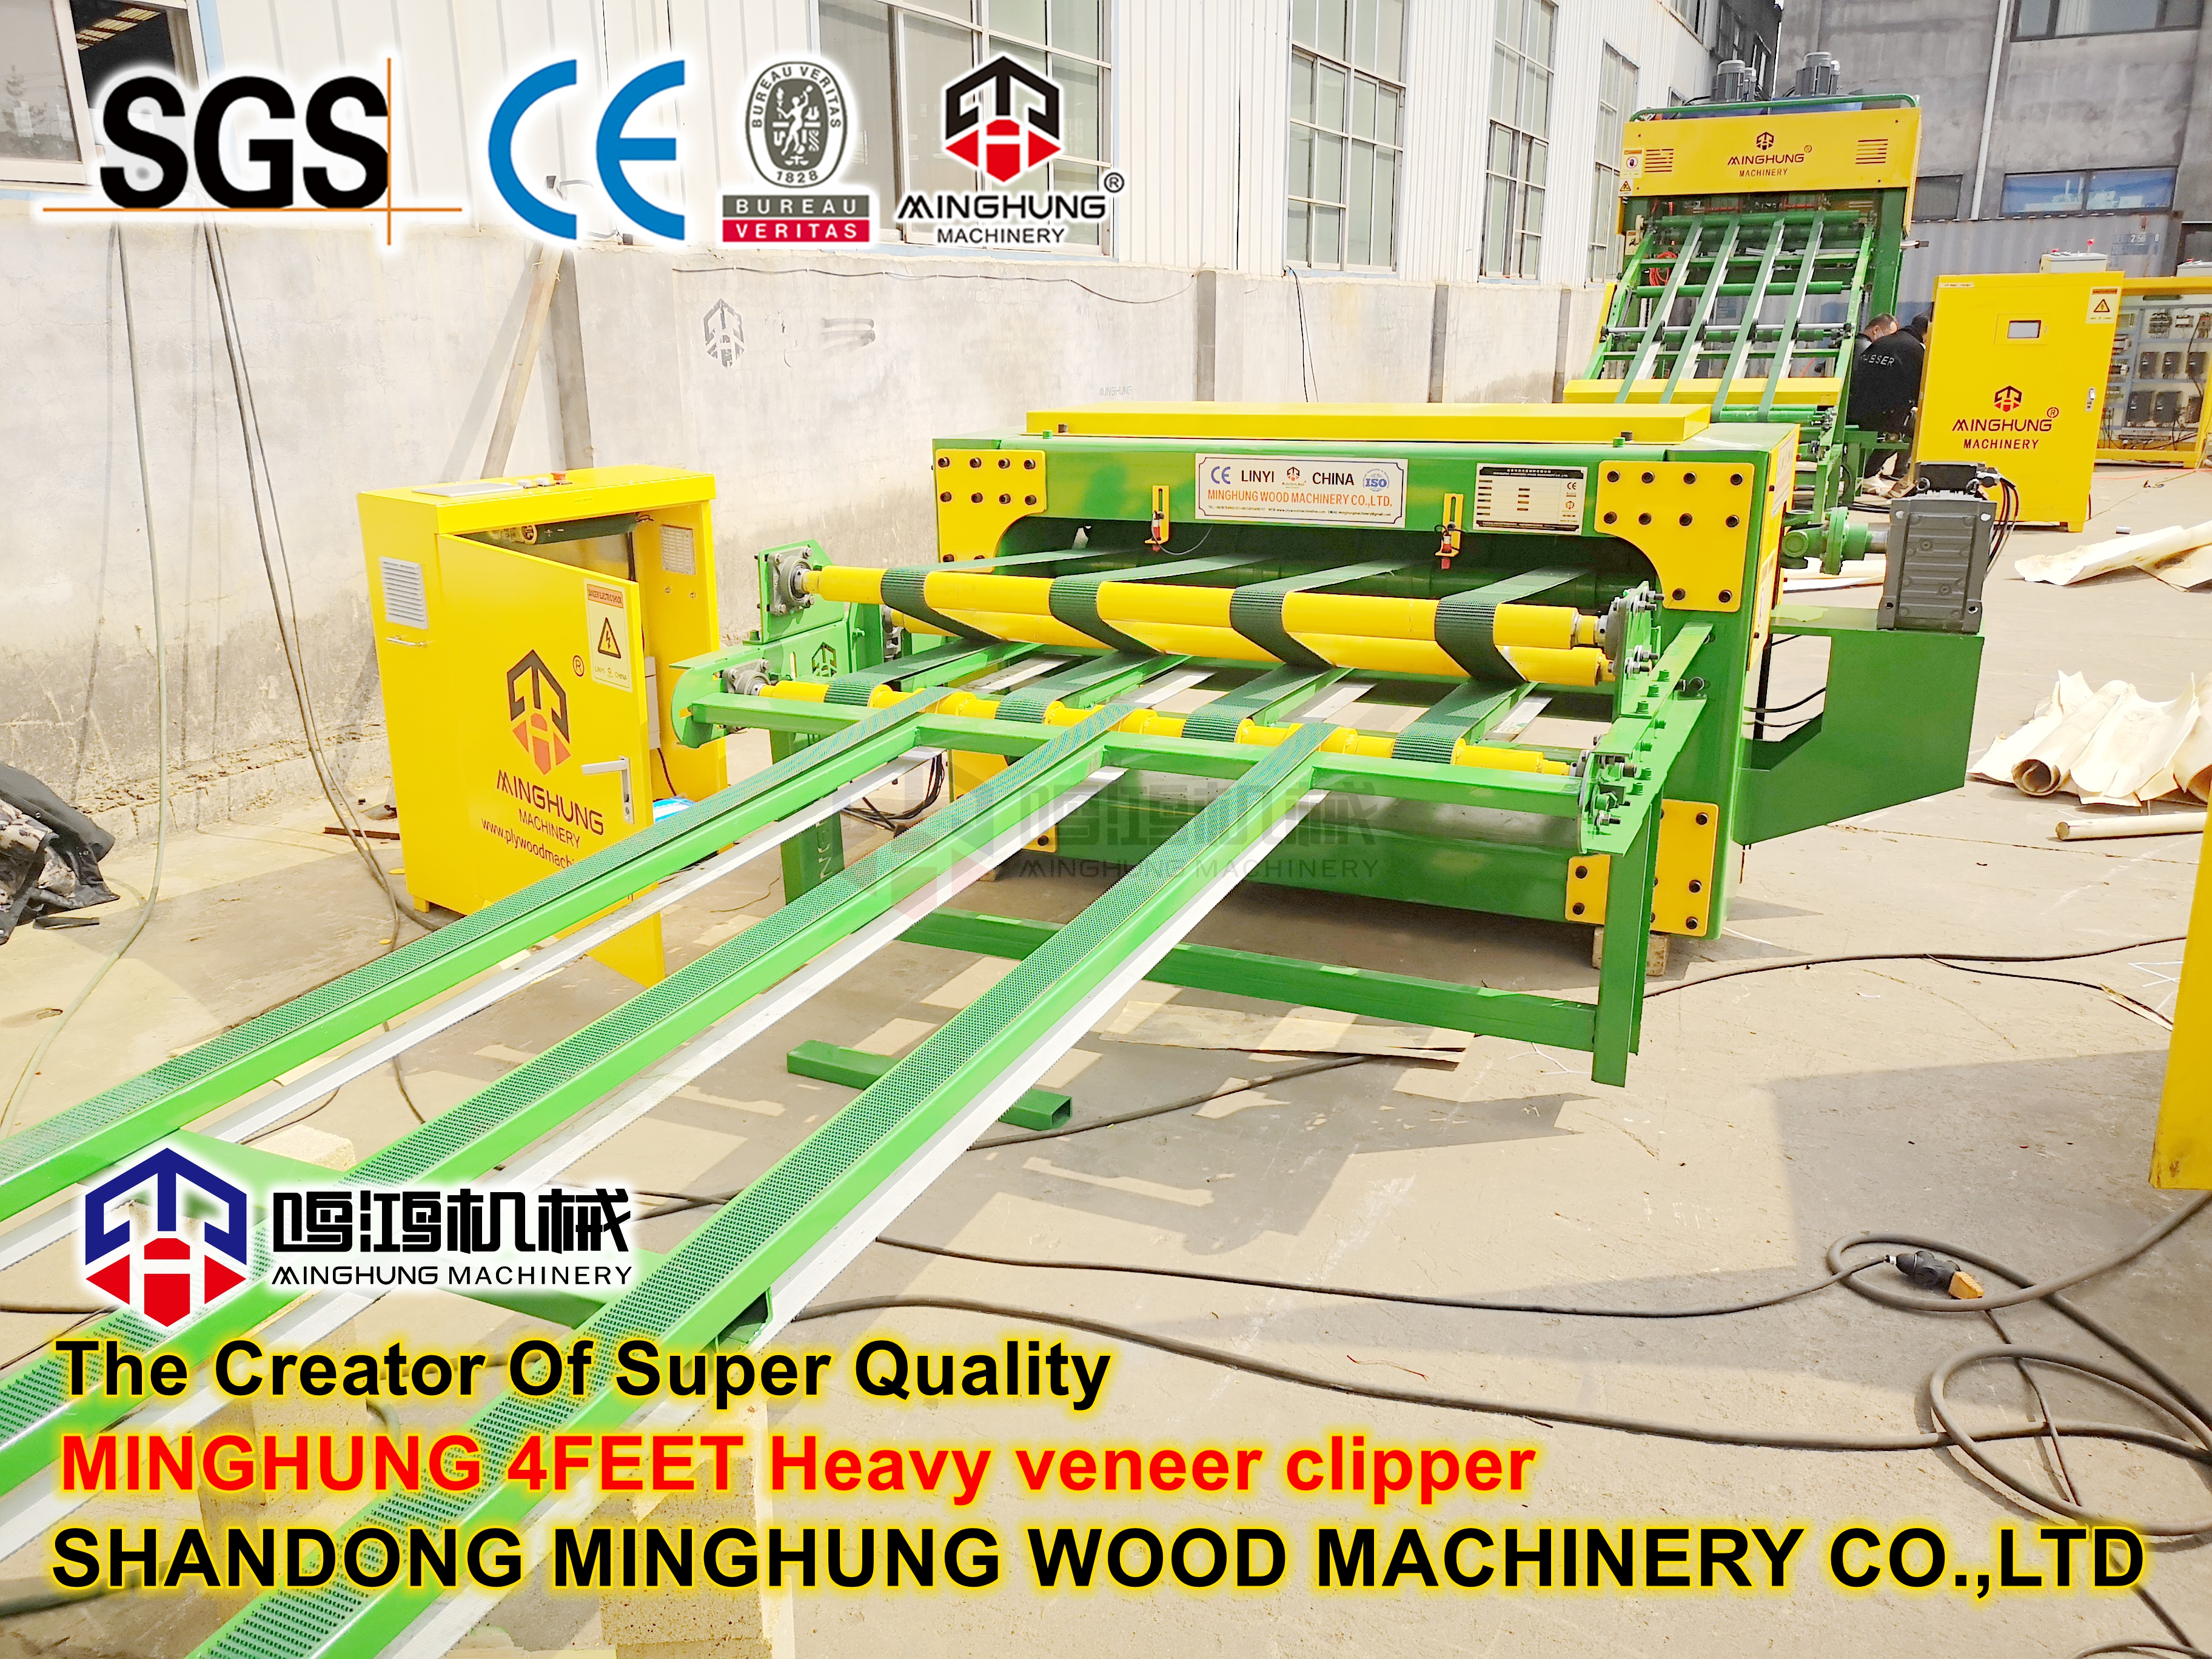 Furnierdrehmaschine zur Herstellung von Holzfurnieren durch Verarbeitung von Hartholz